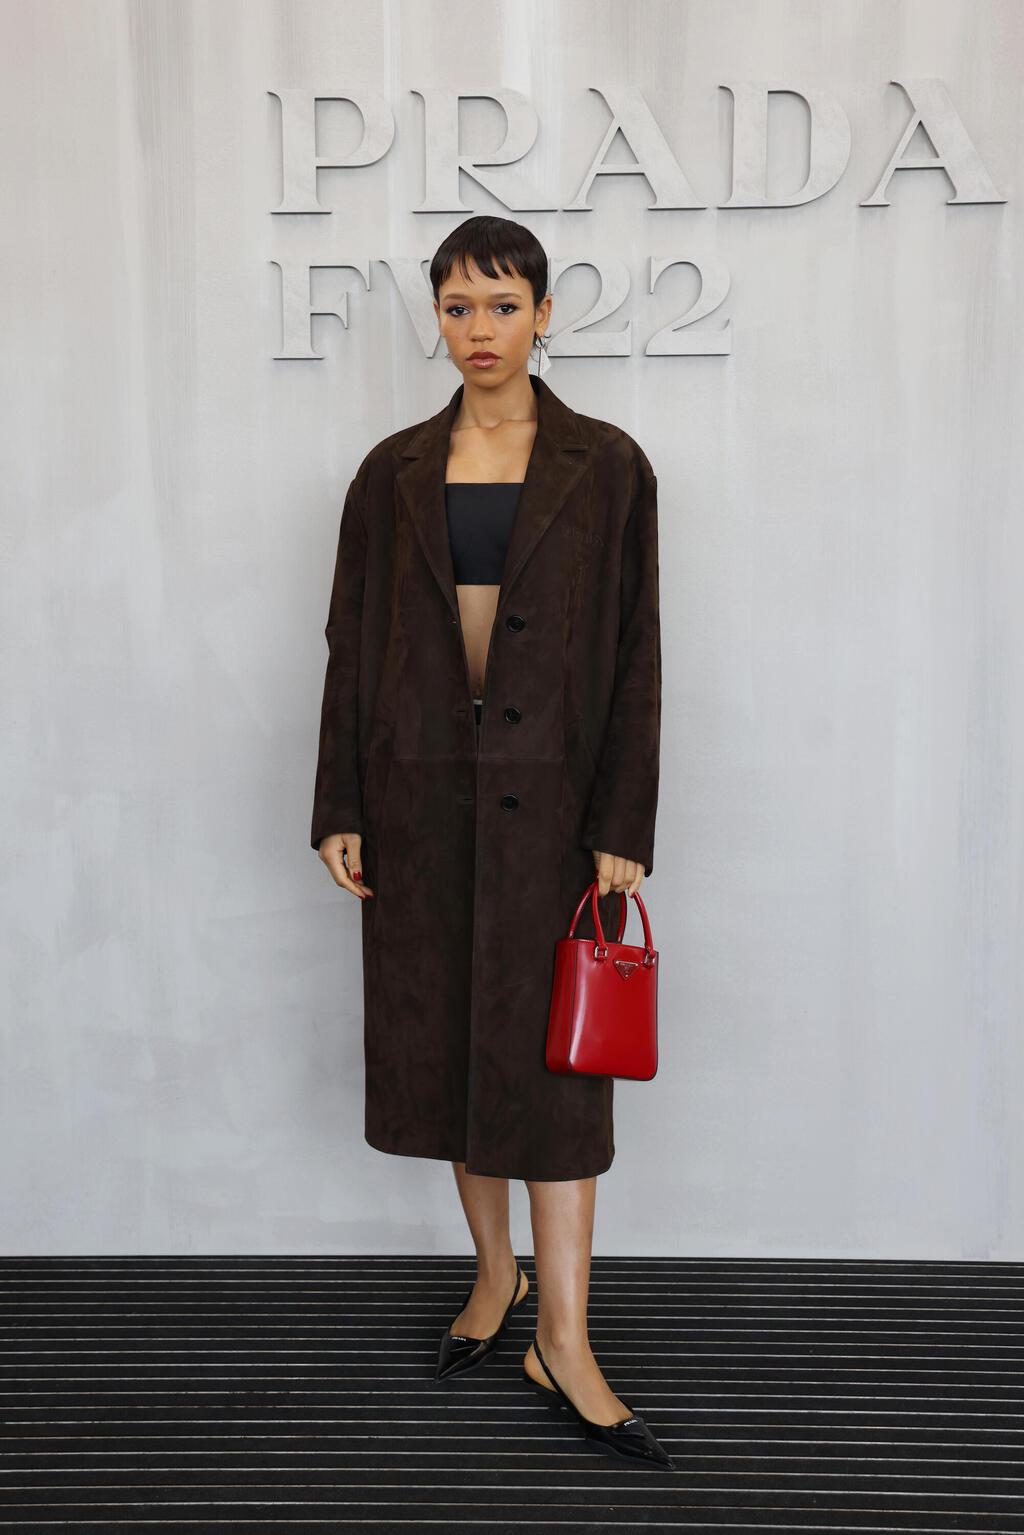 טיילור ראסל בתצוגת אופנה של פראדה, 2022